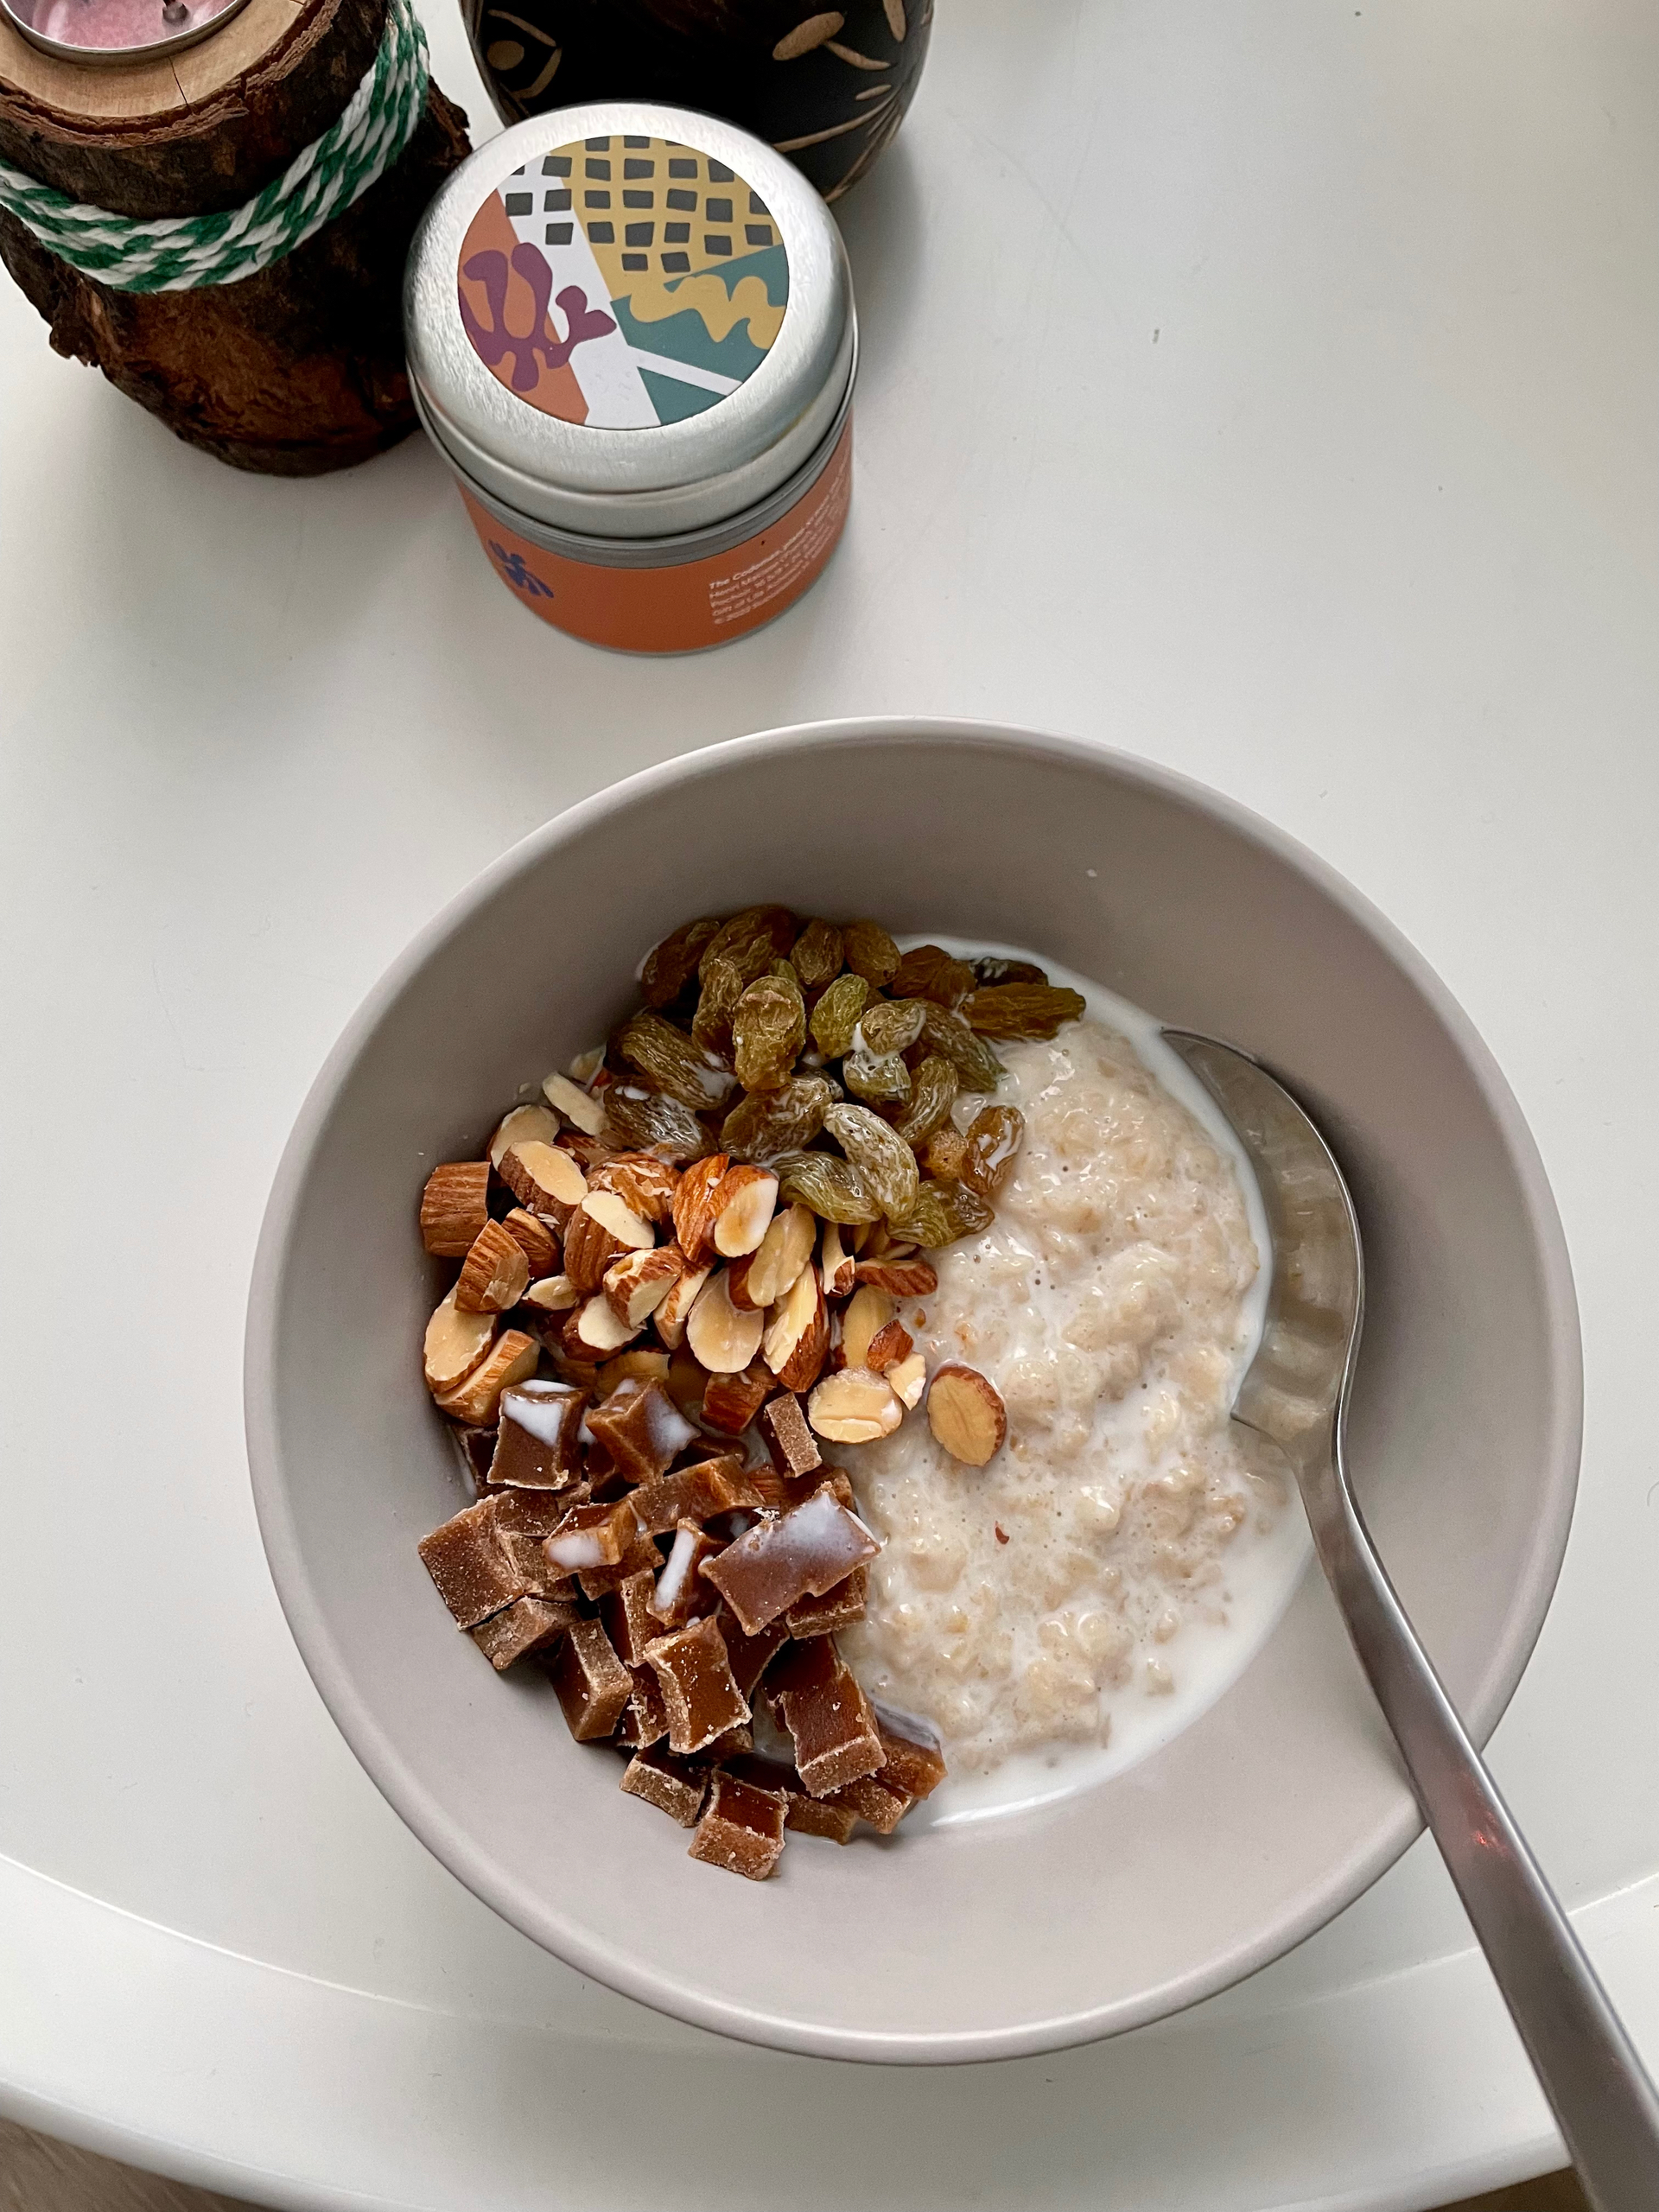 2分钟微波炉燕麦粥 2-min microwaved porridge